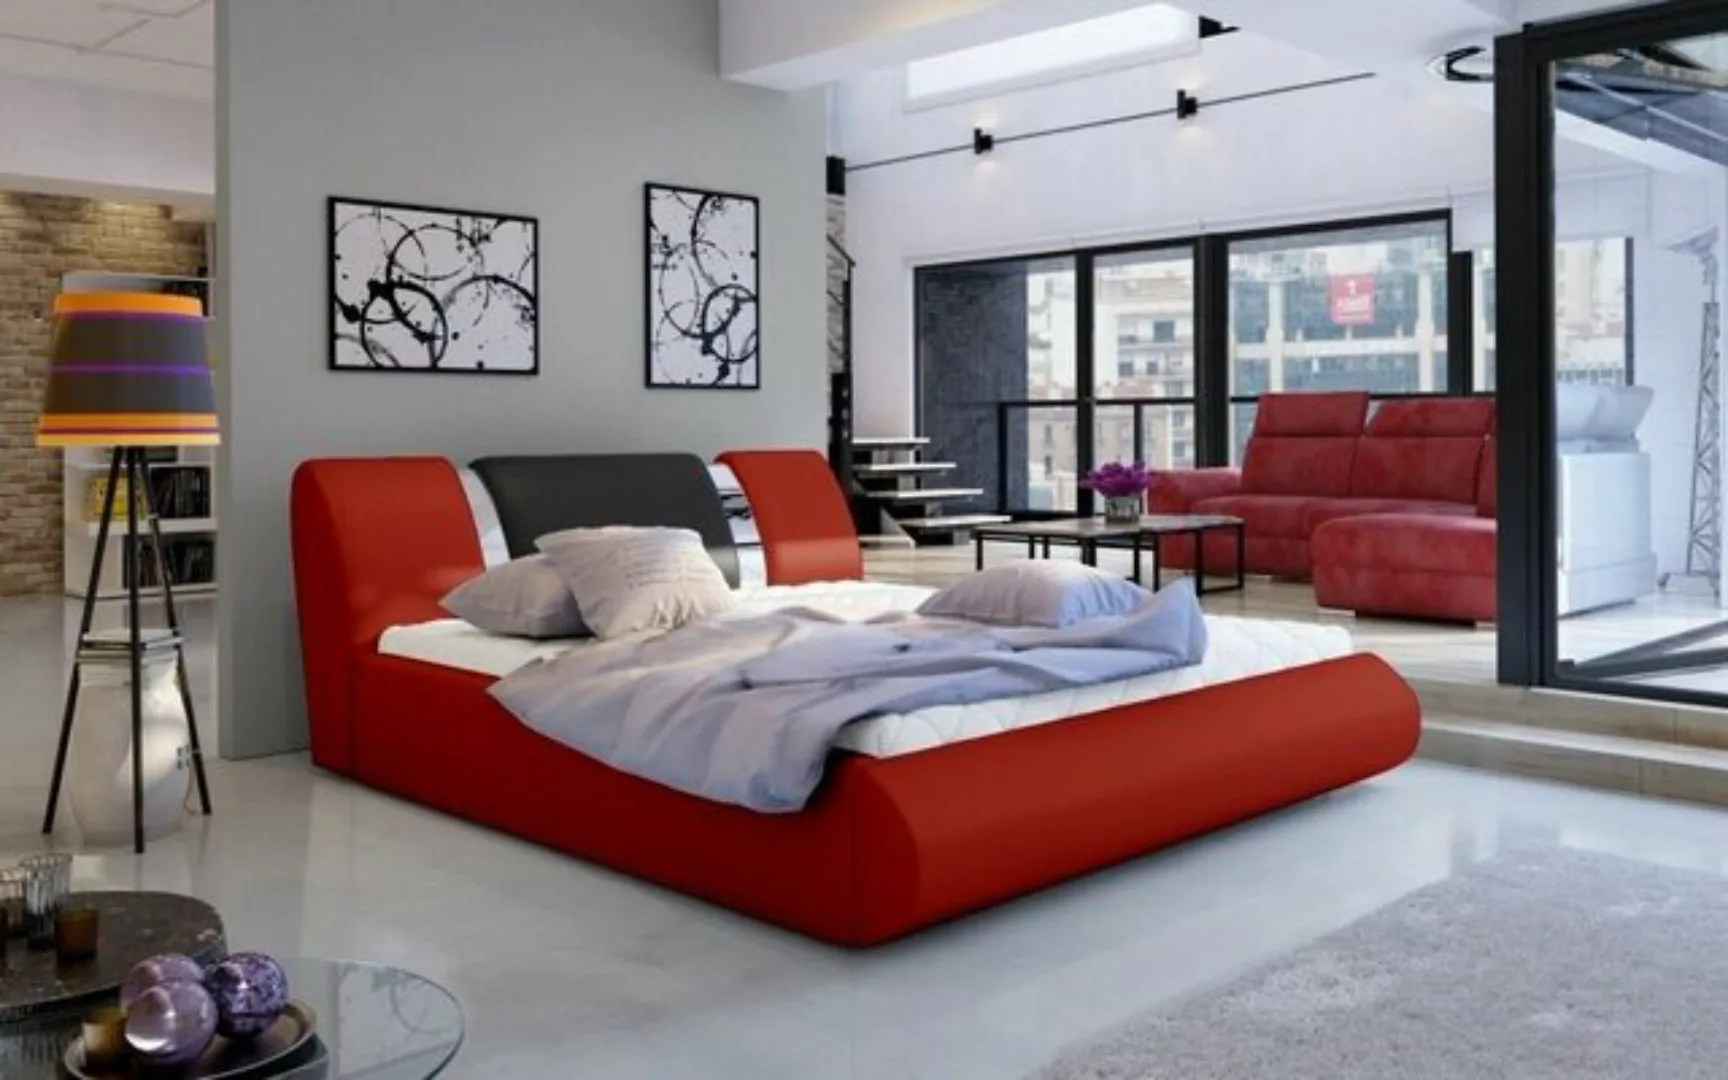 JVmoebel Bett, Luxus Schlafzimmer Bett Polster Design 180x200cm günstig online kaufen